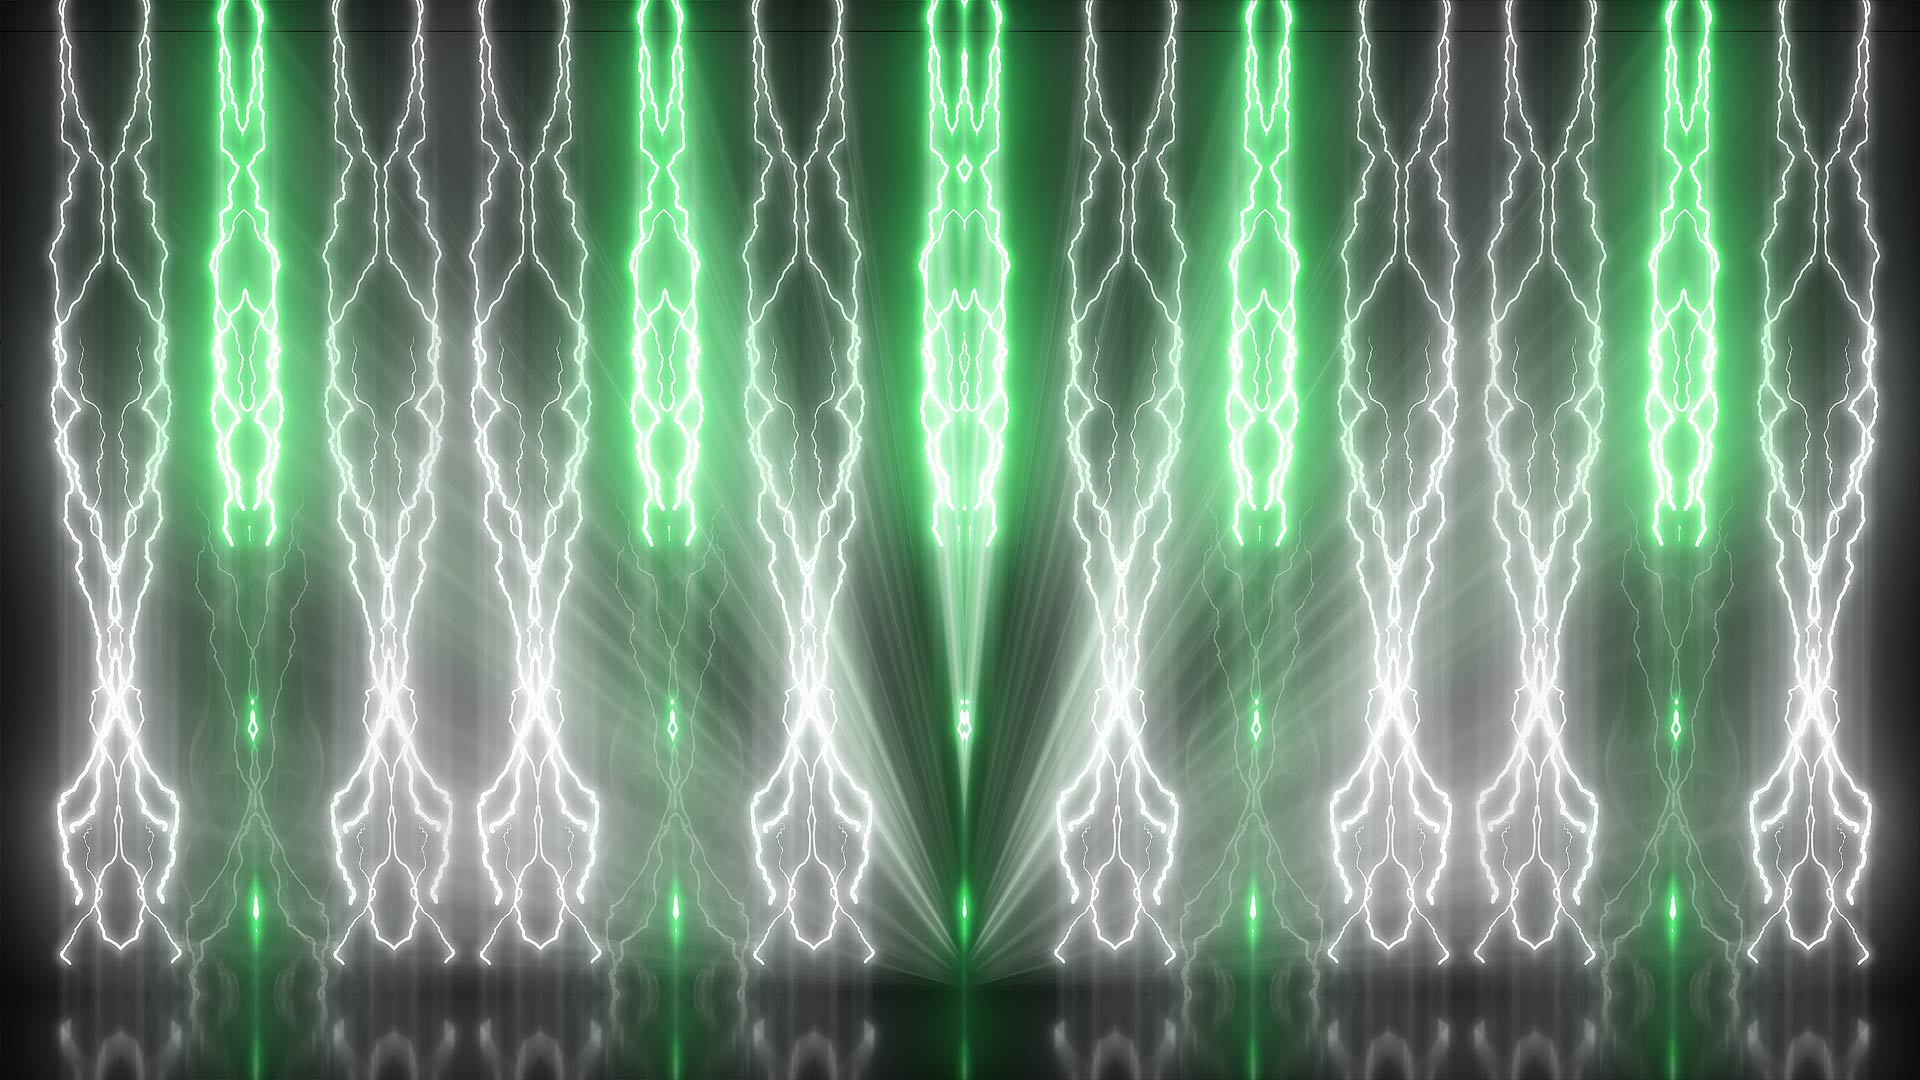 Những hình ảnh của Gnosis lightning sẽ khiến bạn trở nên hoàn toàn đắm mình trong ánh sáng đầy ma mị và cuốn hút. Hãy khám phá ngay bức ảnh này! Translation: Gnosis lightning images will completely immerse you in a mysterious and attractive light. Explore this image now!